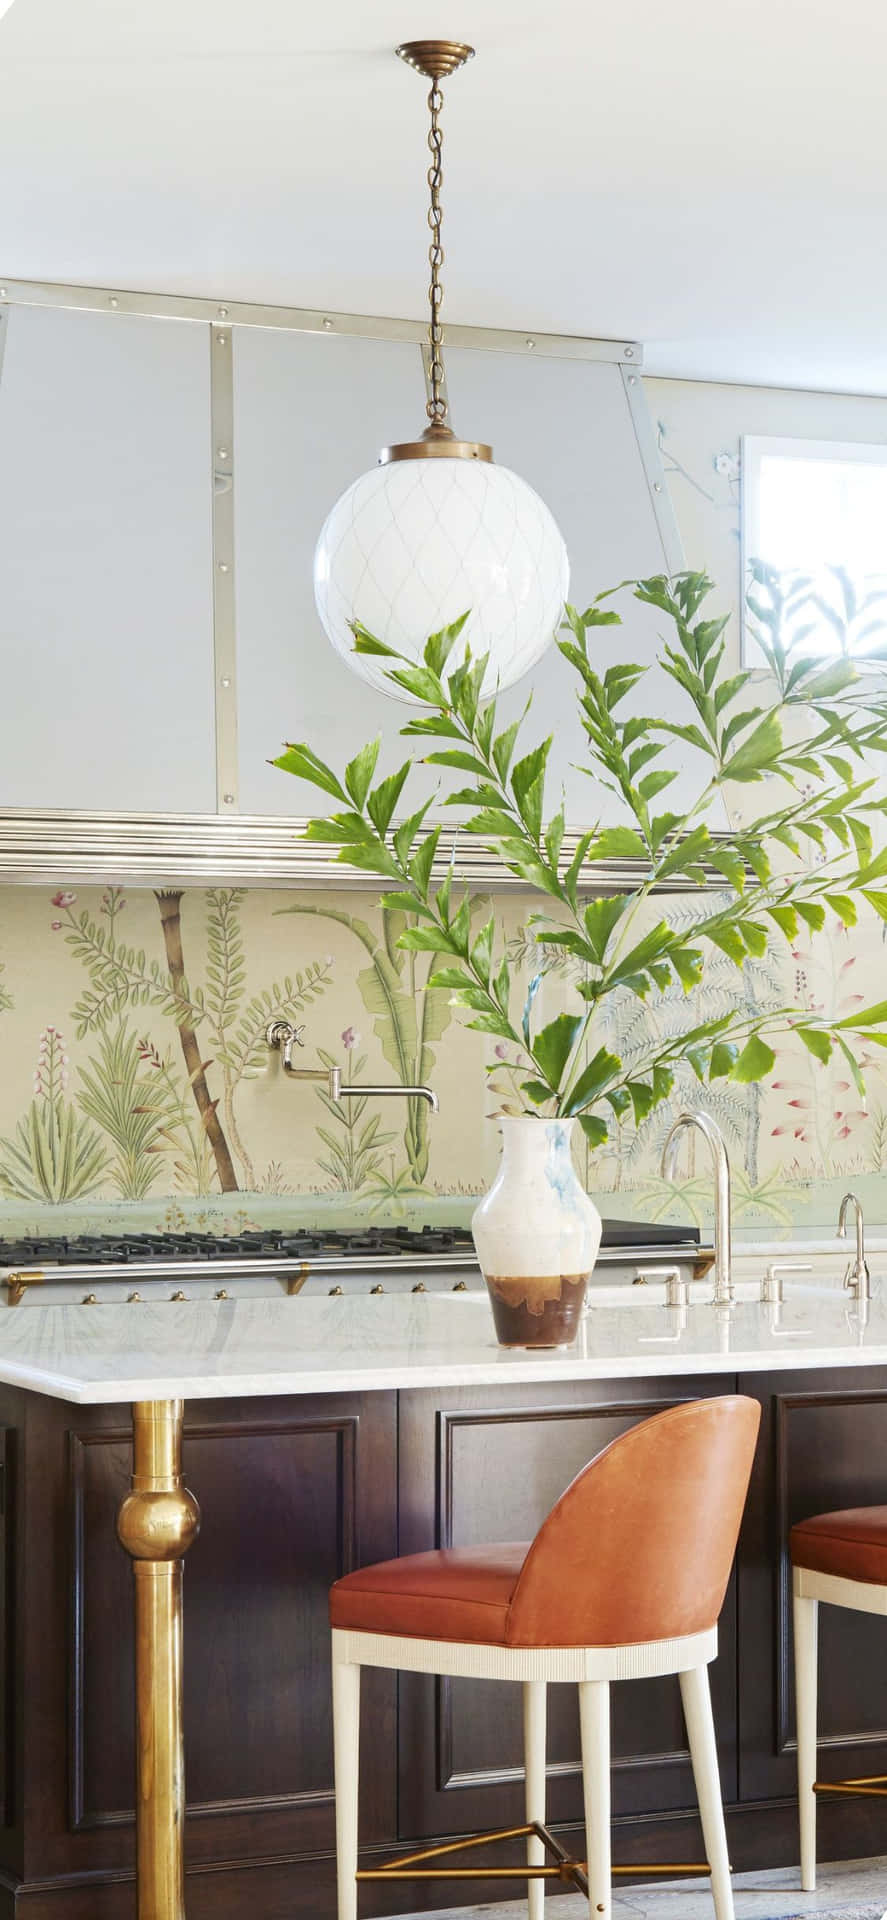 Pflanzeim Vasen-iphone-x-küchenhintergrund